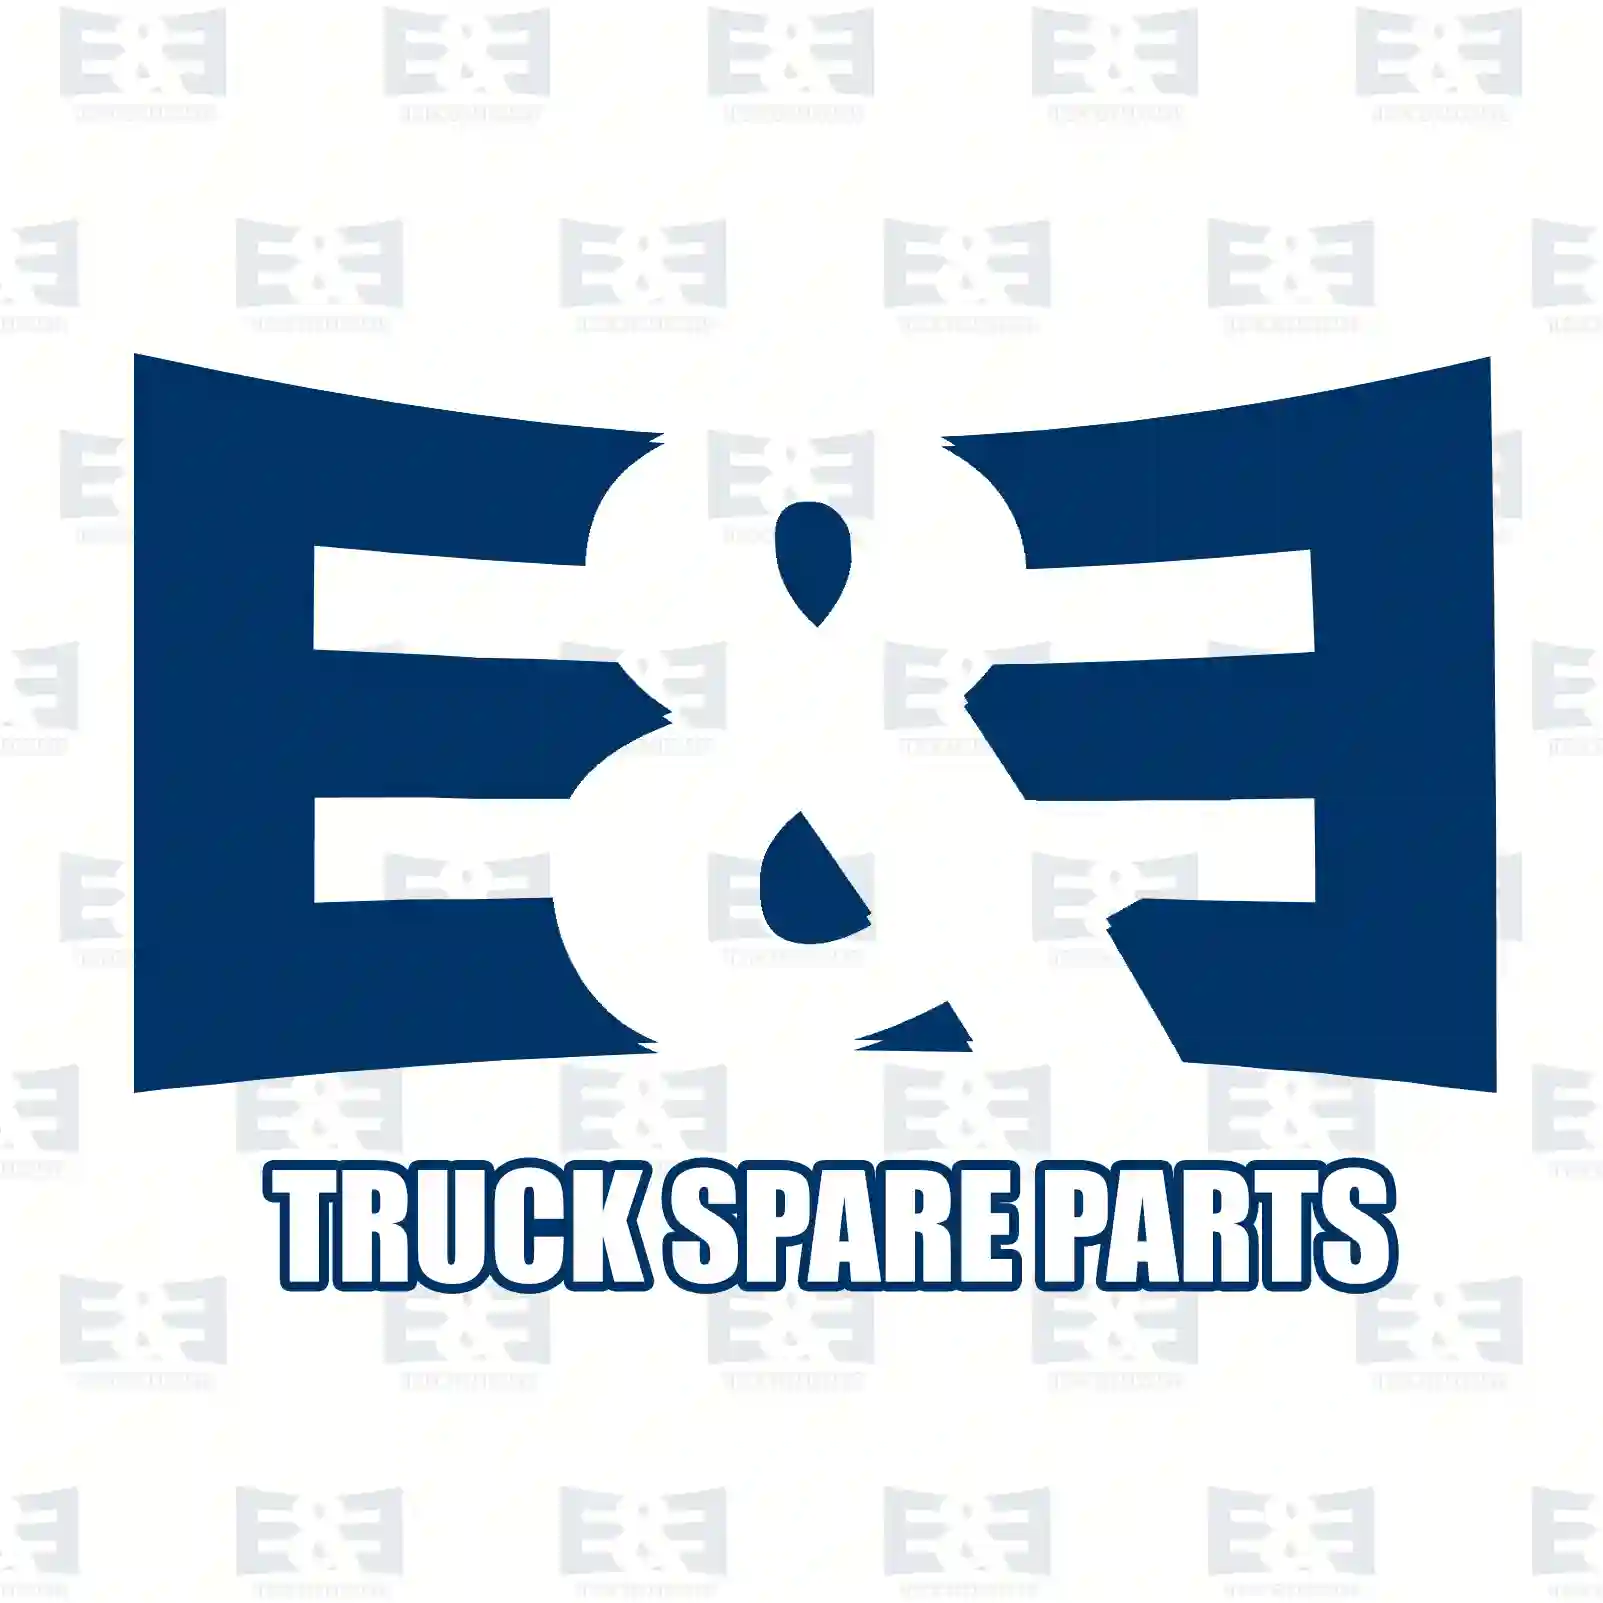 Thermostat, 2E2203714, 0104159, 0390455, 0394346, 104159, 390455, 394346, 1634187210000, 04749724, 04827495, 98492868, 98492873, 0022037775, 0022038275, 1162000015, 272783 ||  2E2203714 E&E Truck Spare Parts | Truck Spare Parts, Auotomotive Spare Parts Thermostat, 2E2203714, 0104159, 0390455, 0394346, 104159, 390455, 394346, 1634187210000, 04749724, 04827495, 98492868, 98492873, 0022037775, 0022038275, 1162000015, 272783 ||  2E2203714 E&E Truck Spare Parts | Truck Spare Parts, Auotomotive Spare Parts